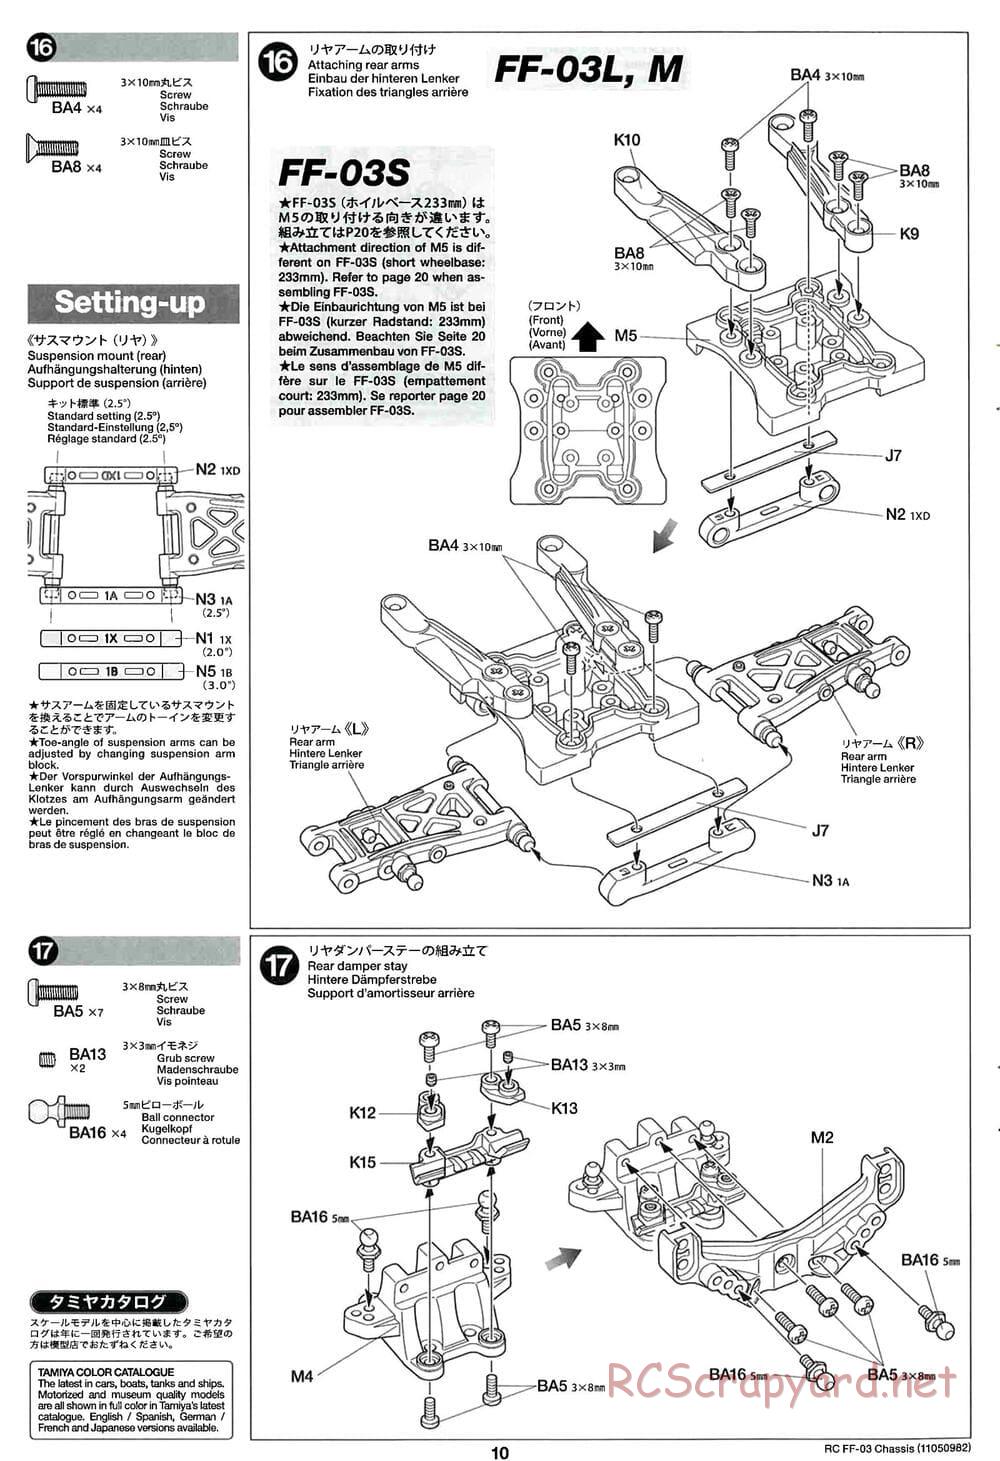 Tamiya - Castrol Honda Civic VTi - FF-03 Chassis - Manual - Page 10